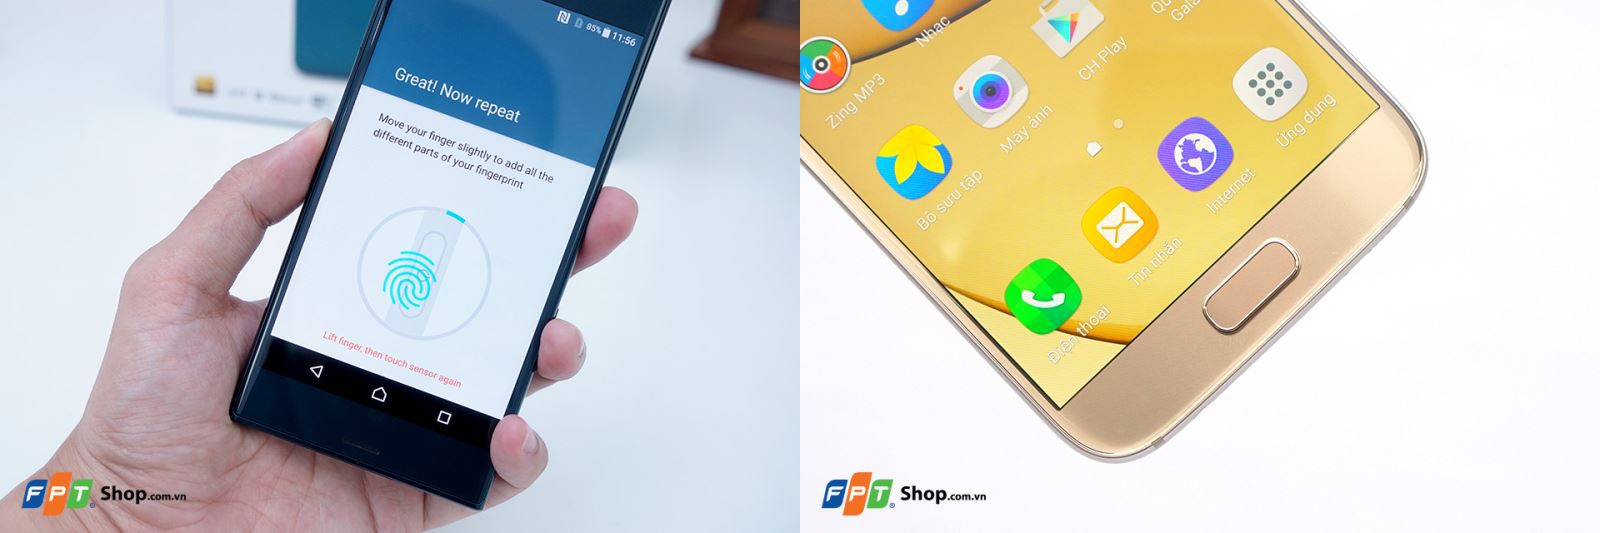 Xperia XZ và Galaxy S7 có vị trí đặt vân tay khác nhau